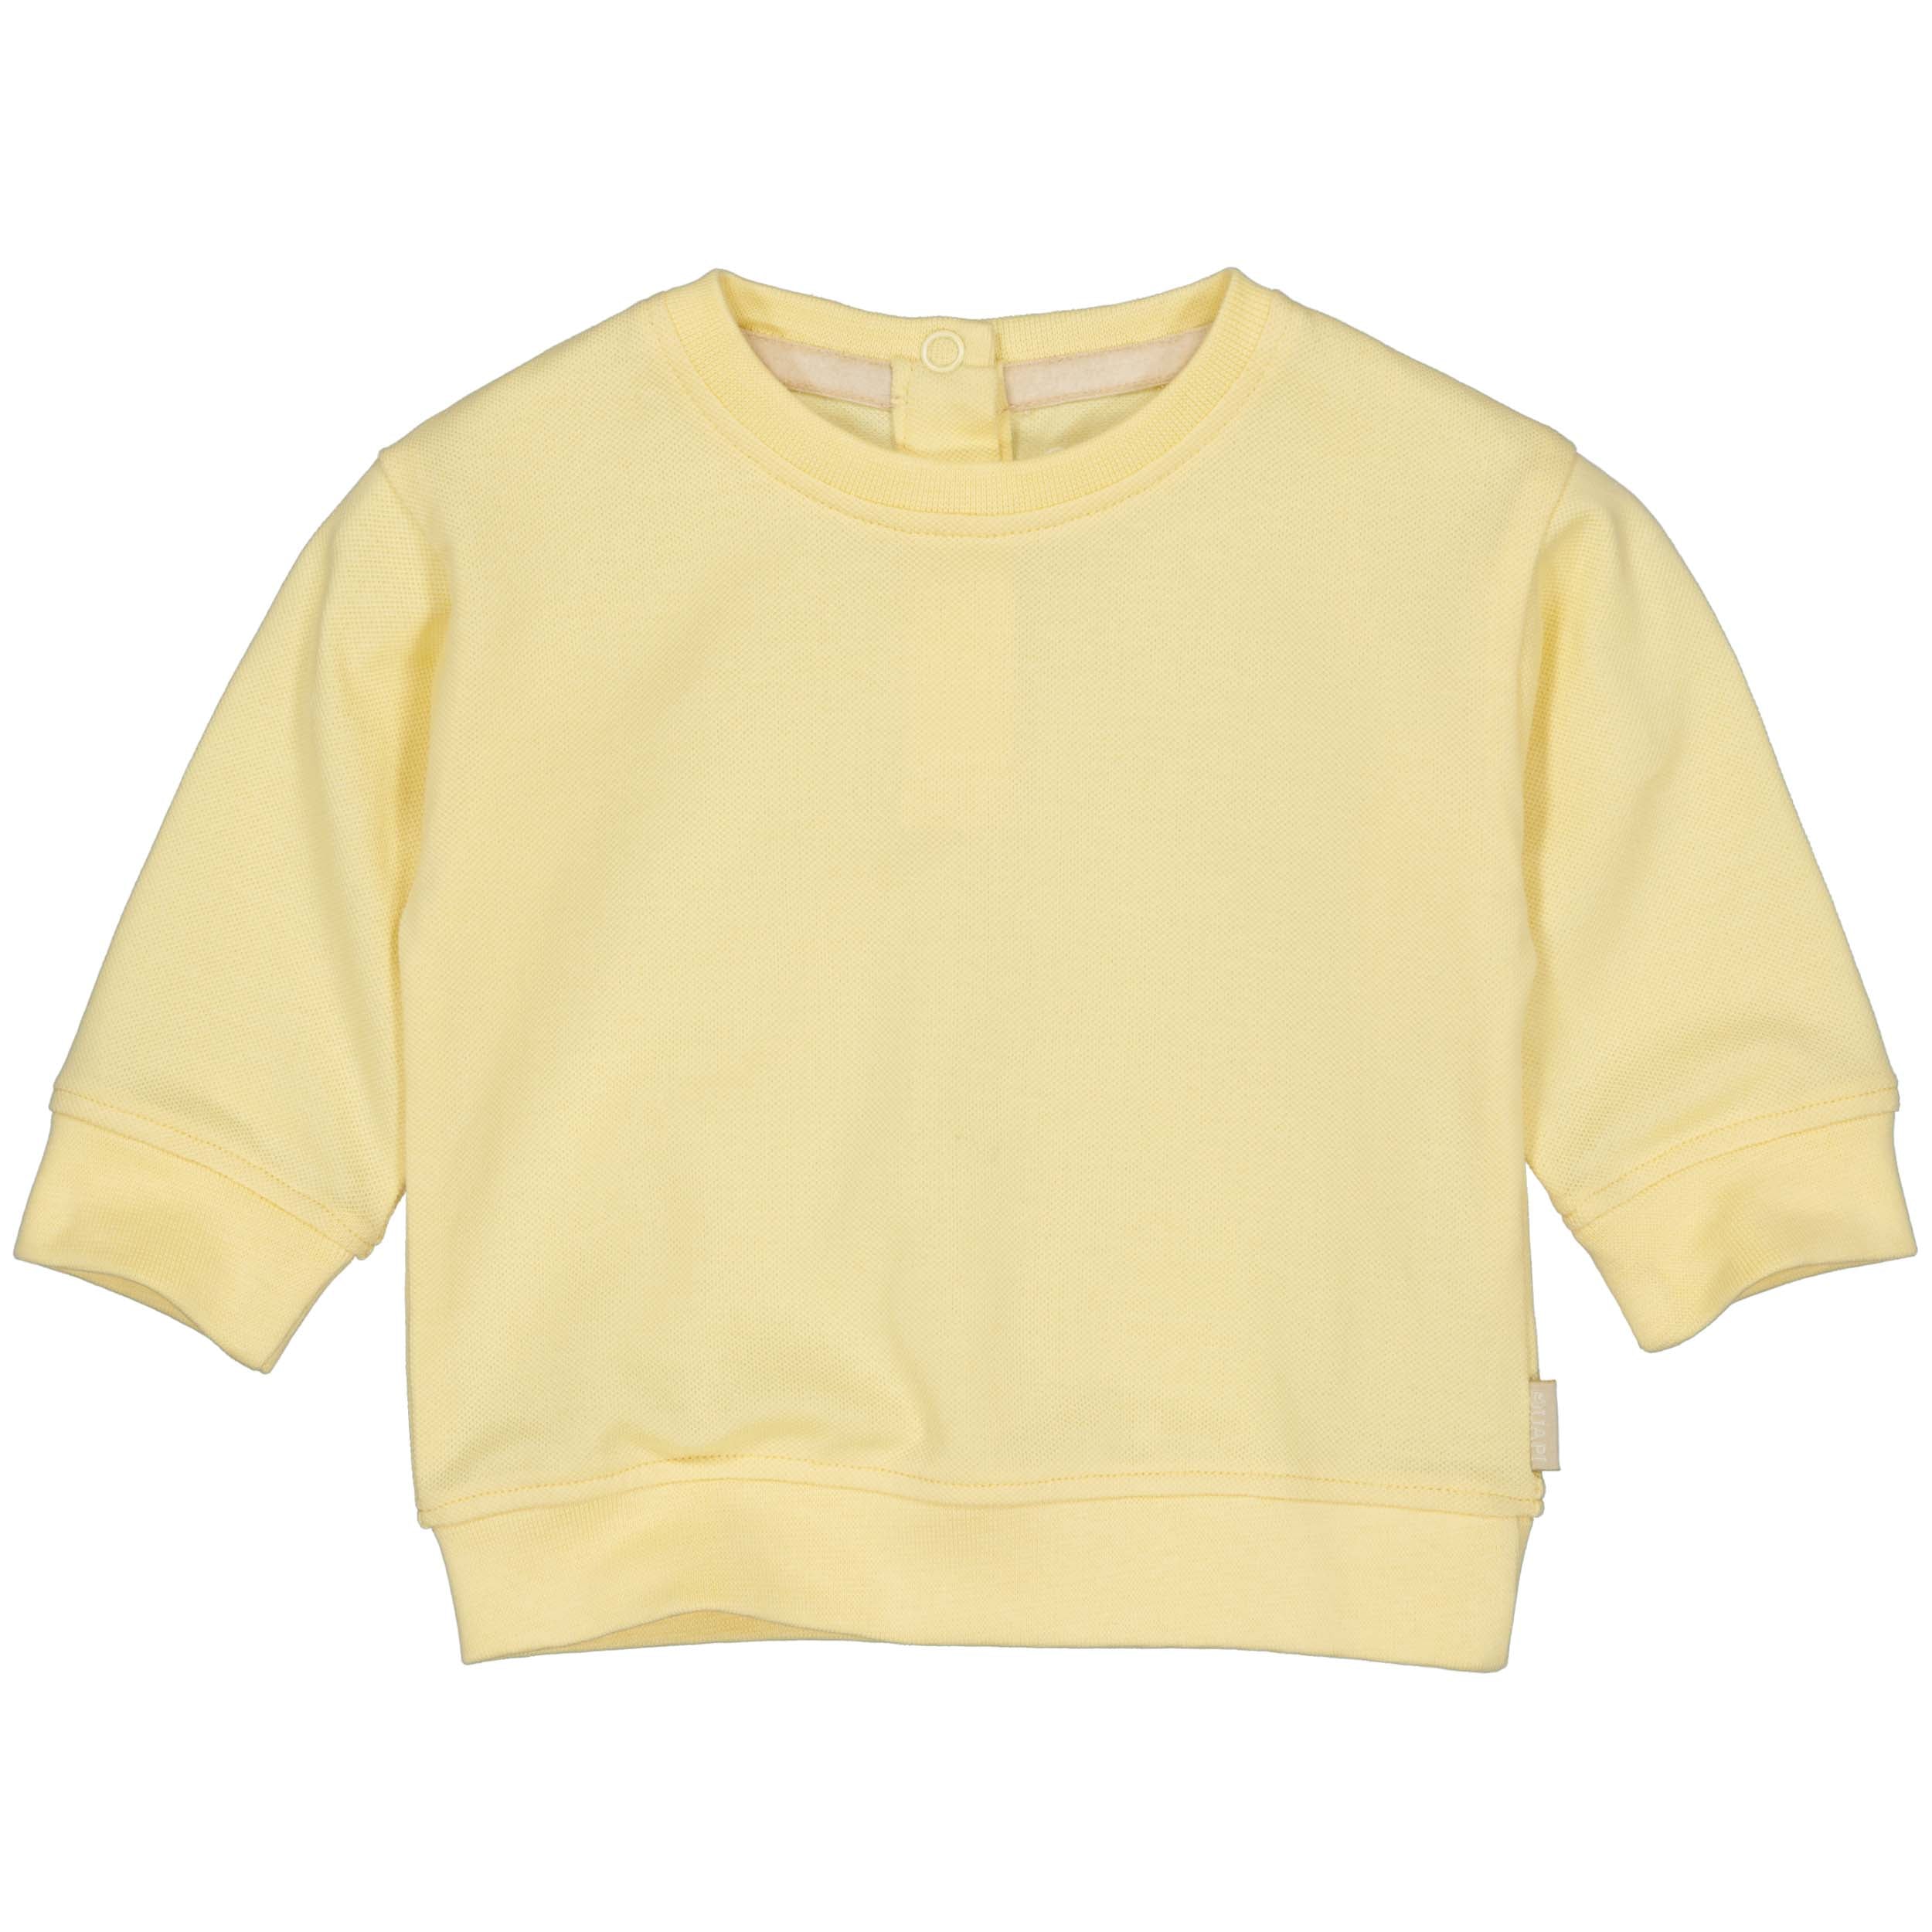 Jongens Sweater Sid van Quapi Newborn in de kleur Yellow Cream in maat 68.